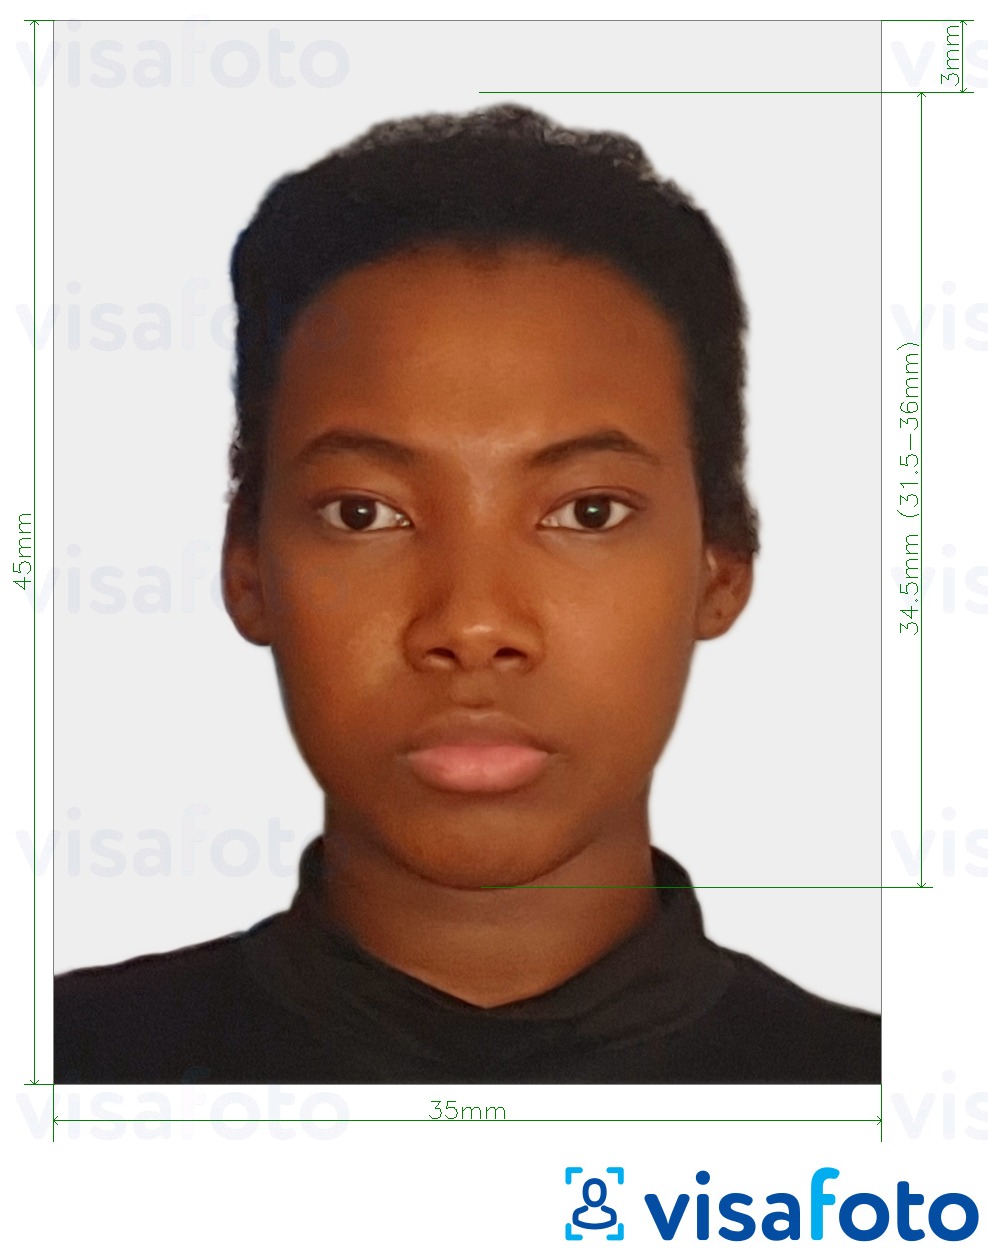 Contoh dari foto untuk Visa Suriname 45x35 mm (1,77x1,37 inci) dengan ukuran spesifikasi yang tepat